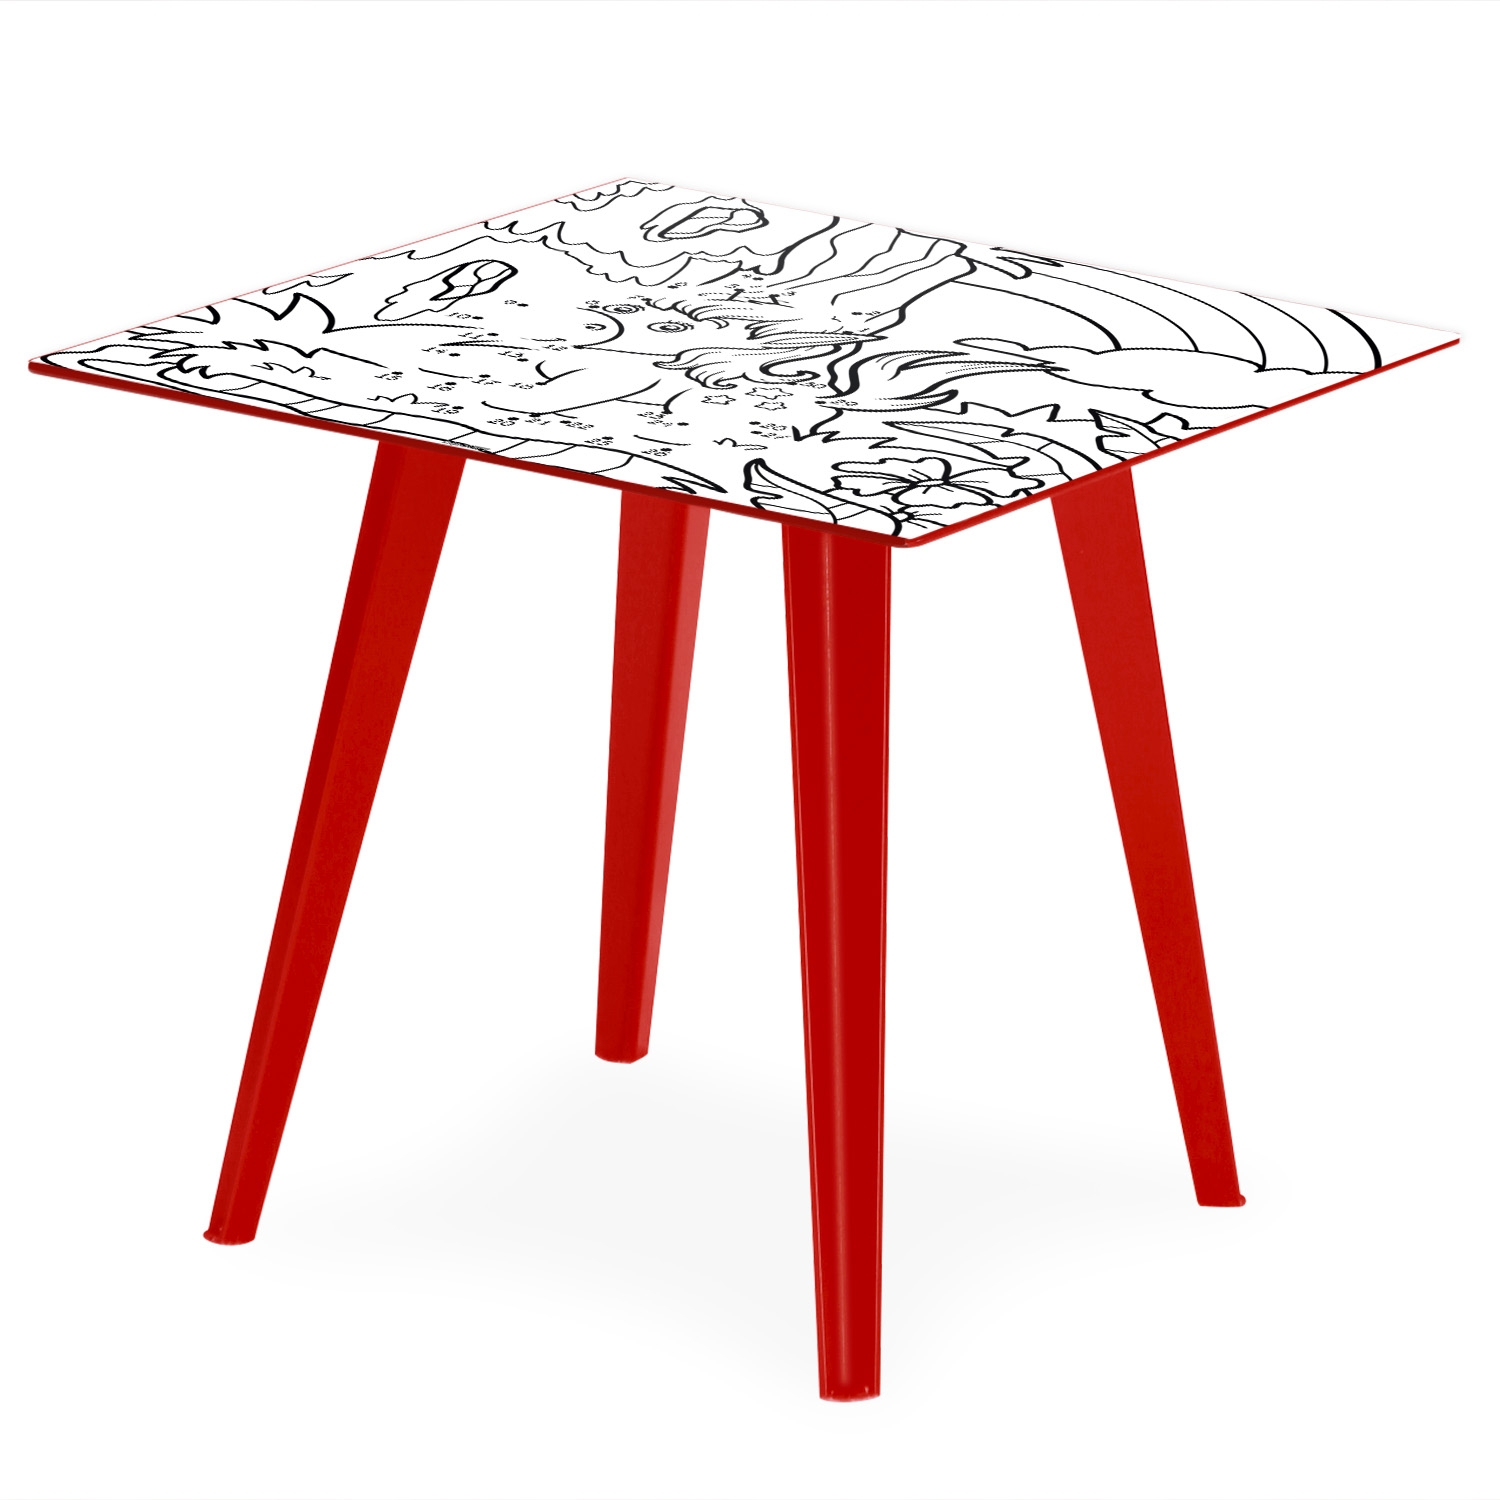 Blickfang Quadratischer, magnetischer Beistelltisch aus rotem Metall 40 cm mit 3 Tischsets Kids